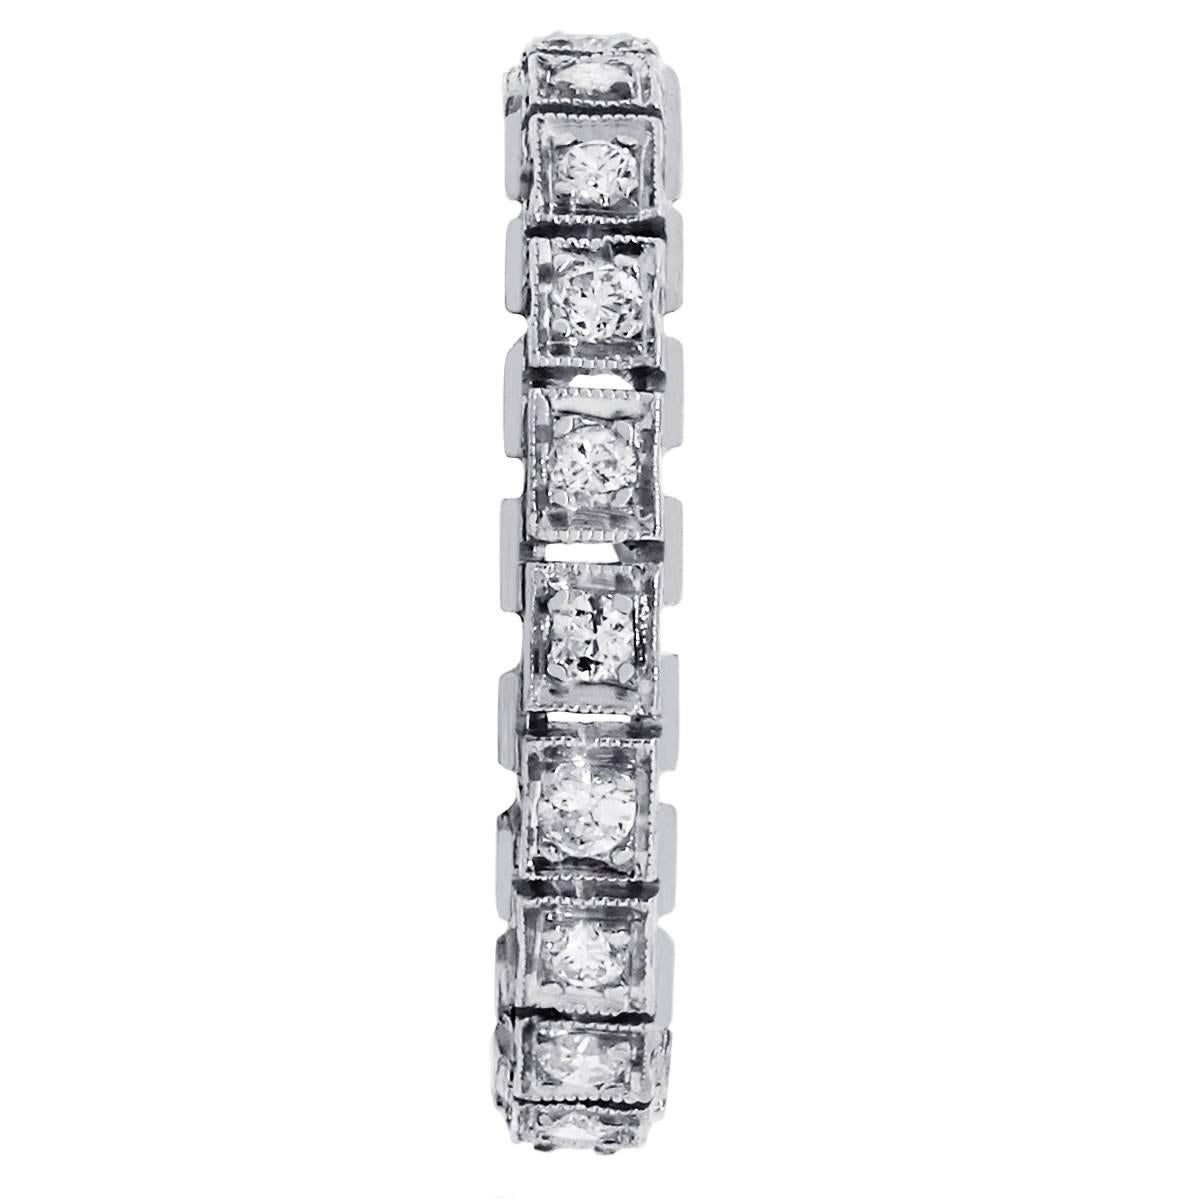 Material: Platin
Diamant-Details: Ungefähr 0,45ctw runde Brillanten. Die Diamanten haben eine Farbe von H/I und eine Reinheit von SI
Ringgröße: 6
Ring-Maße: 0.90″ x 0.20″ x 0.90″
Gesamtgewicht: 3,5g (2,3dwt)
SKU: G7013